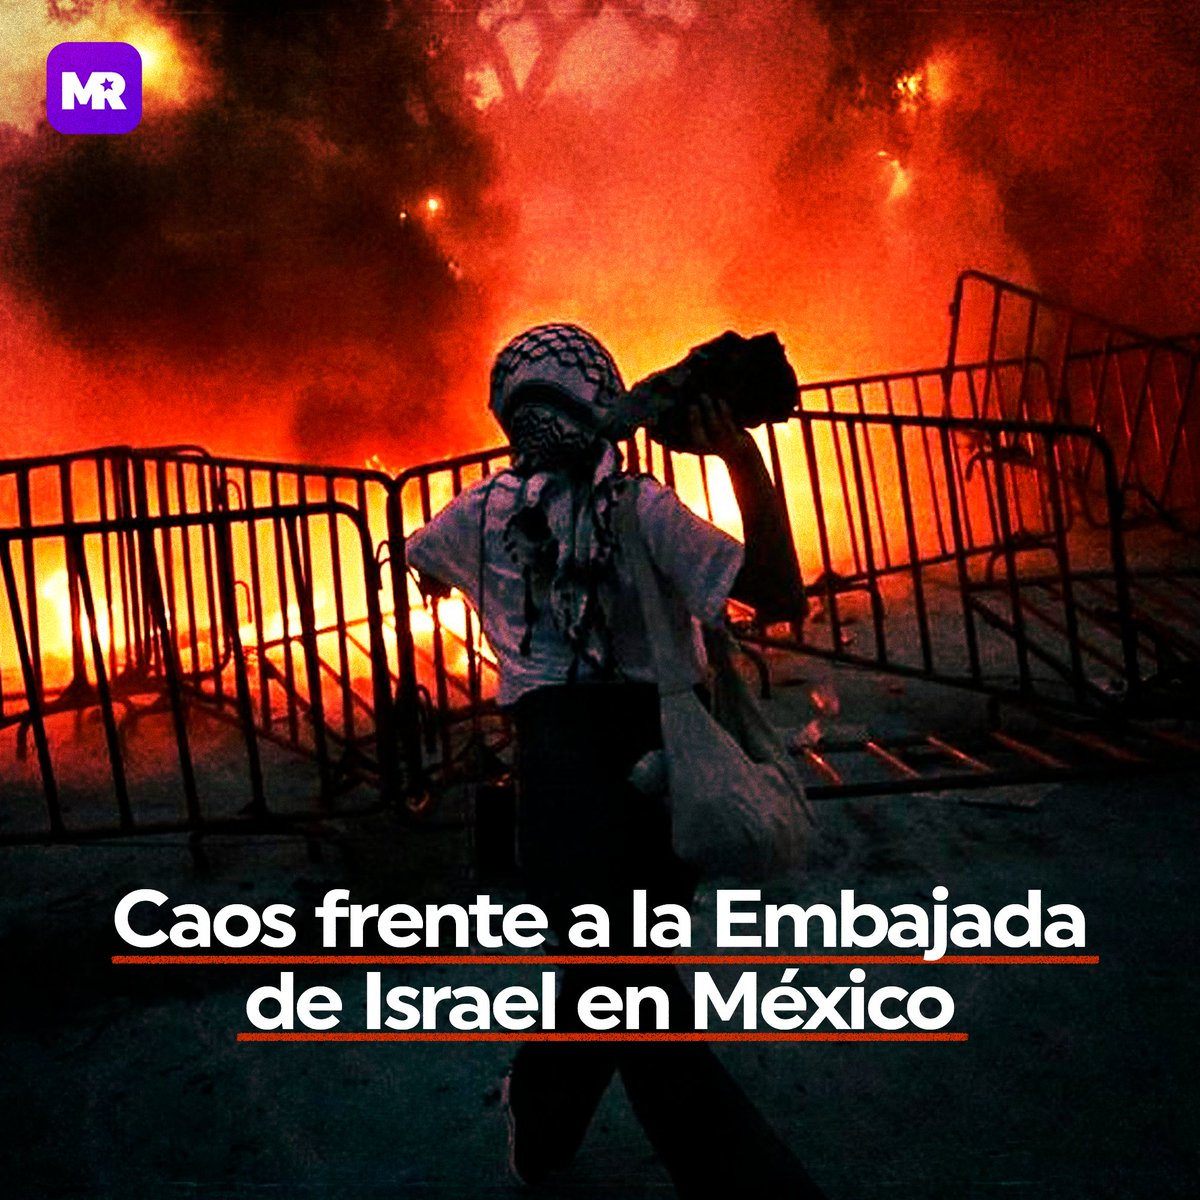 📢 Este martes, manifestantes propalestinos realizaron una protesta masiva frente a la Embajada de Israel en México. 🚨 Intentaron derribar vallas y lanzaron objetos, incluyendo cócteles molotov, a los policías y el edificio.